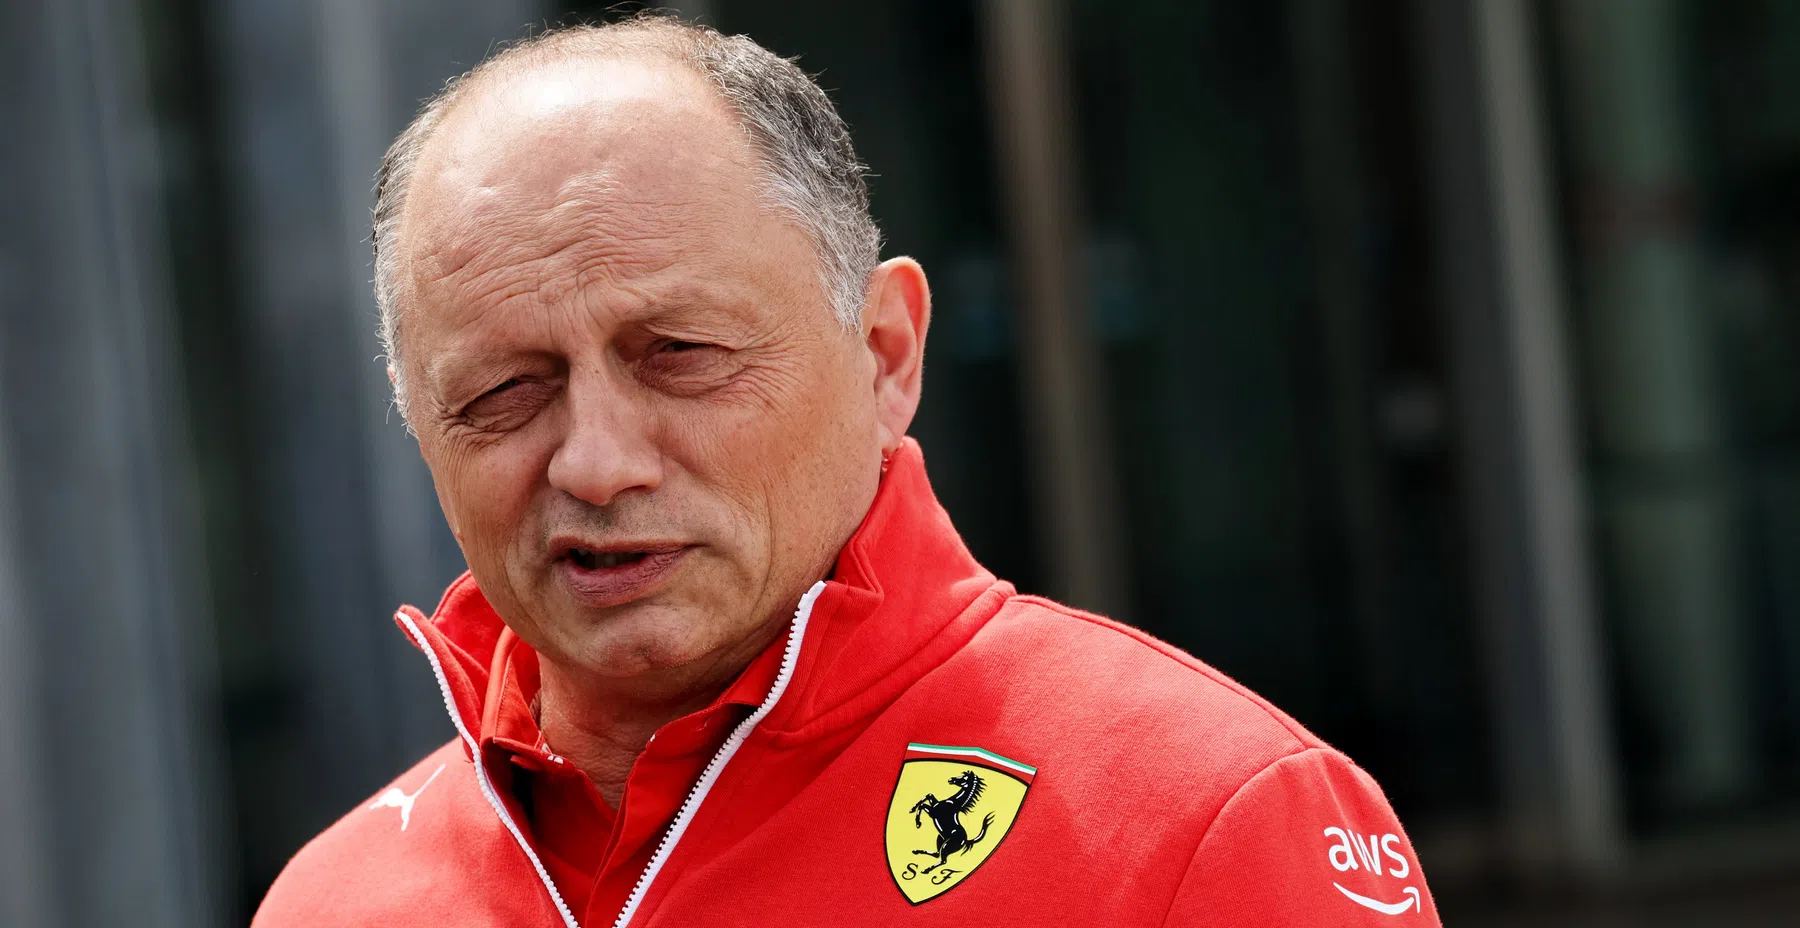 Vasseur, patron de l'équipe Ferrari, parle de l'impact de Newey